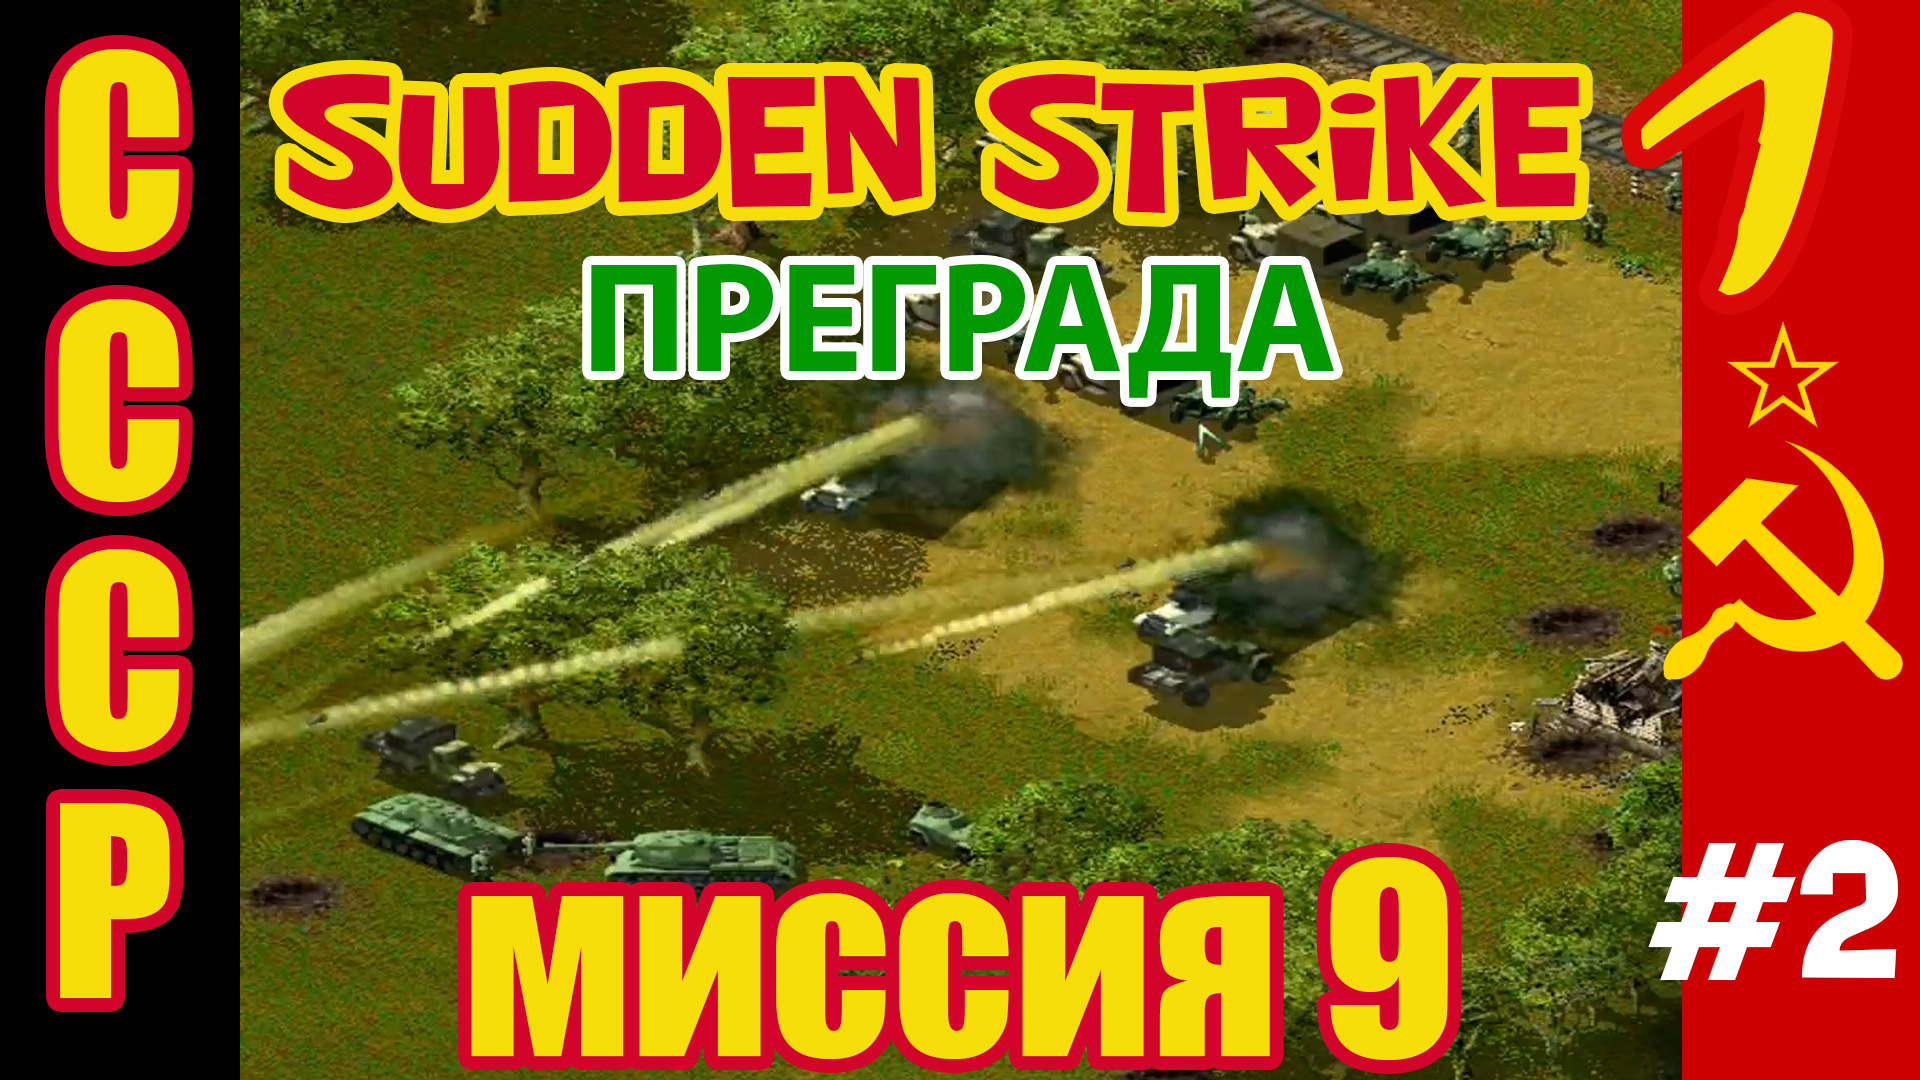 Противостояние 3 ⭐ Sudden Strike ⭐ Прохождение СССР ⭐ Преграда - миссия 9 #2